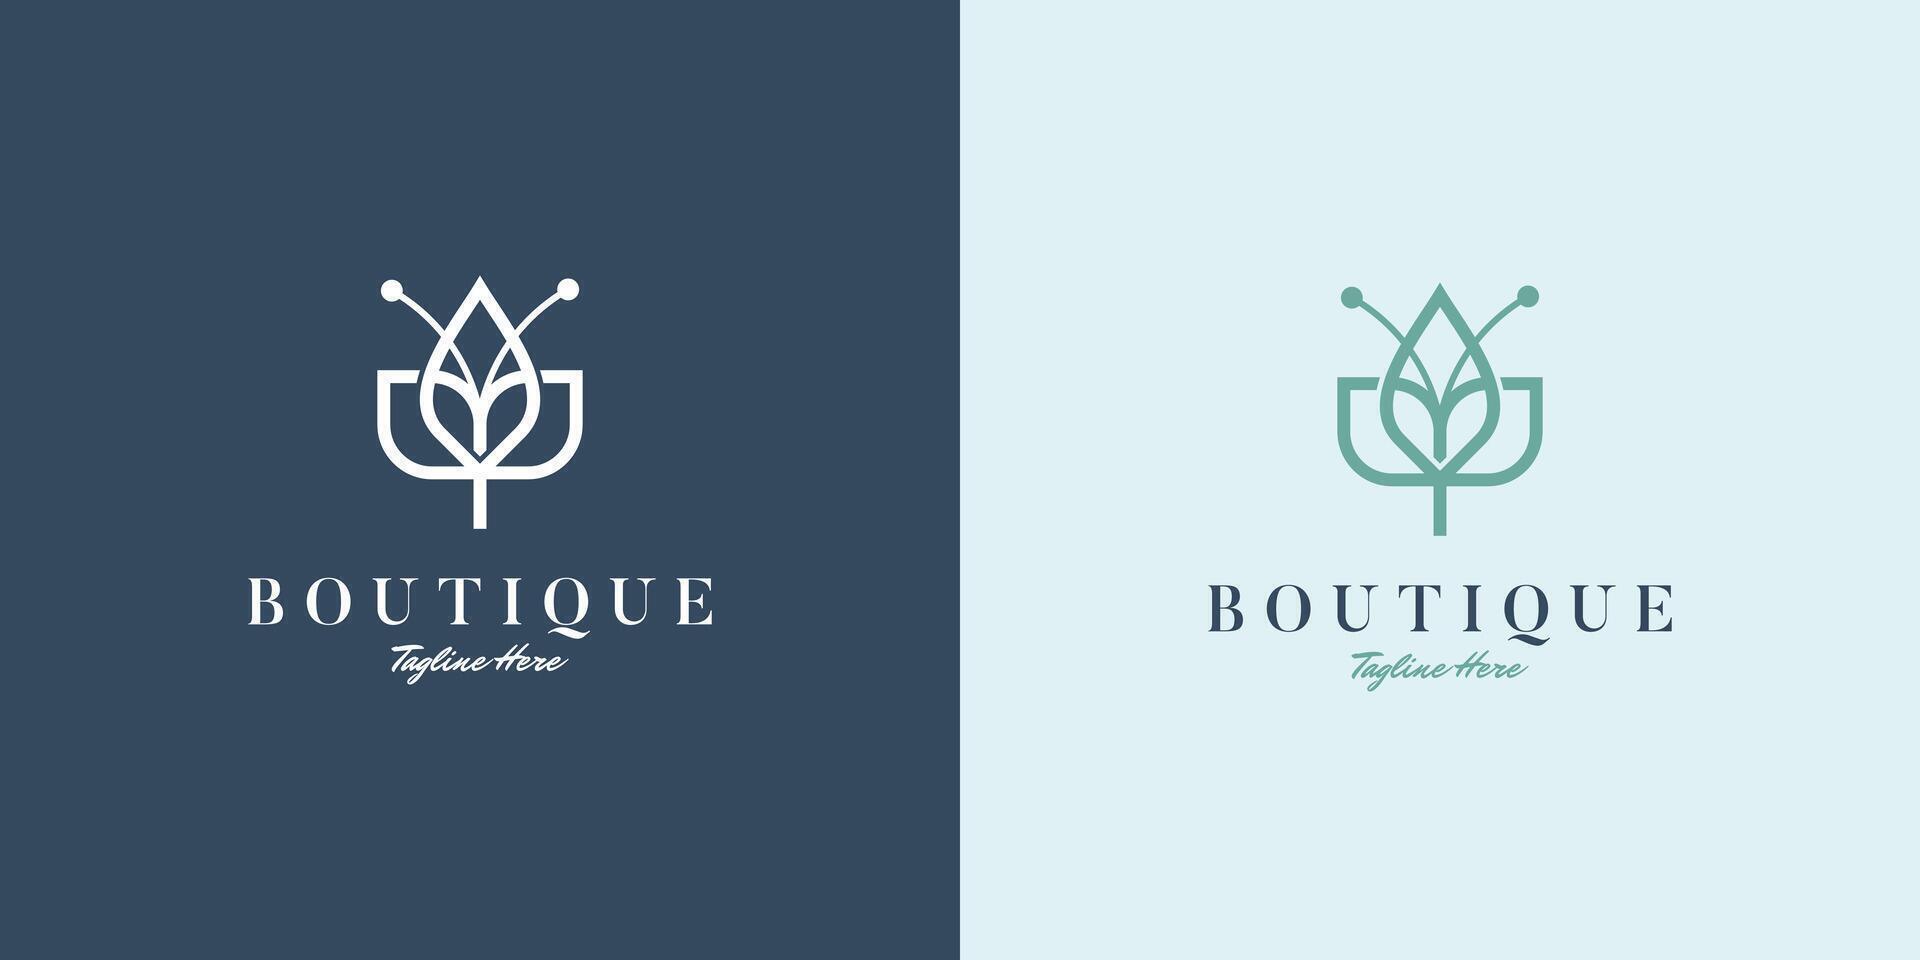 minimalista fiore logo design ispirazione per bellezza, boutique, donne, cosmetici, yoga vettore